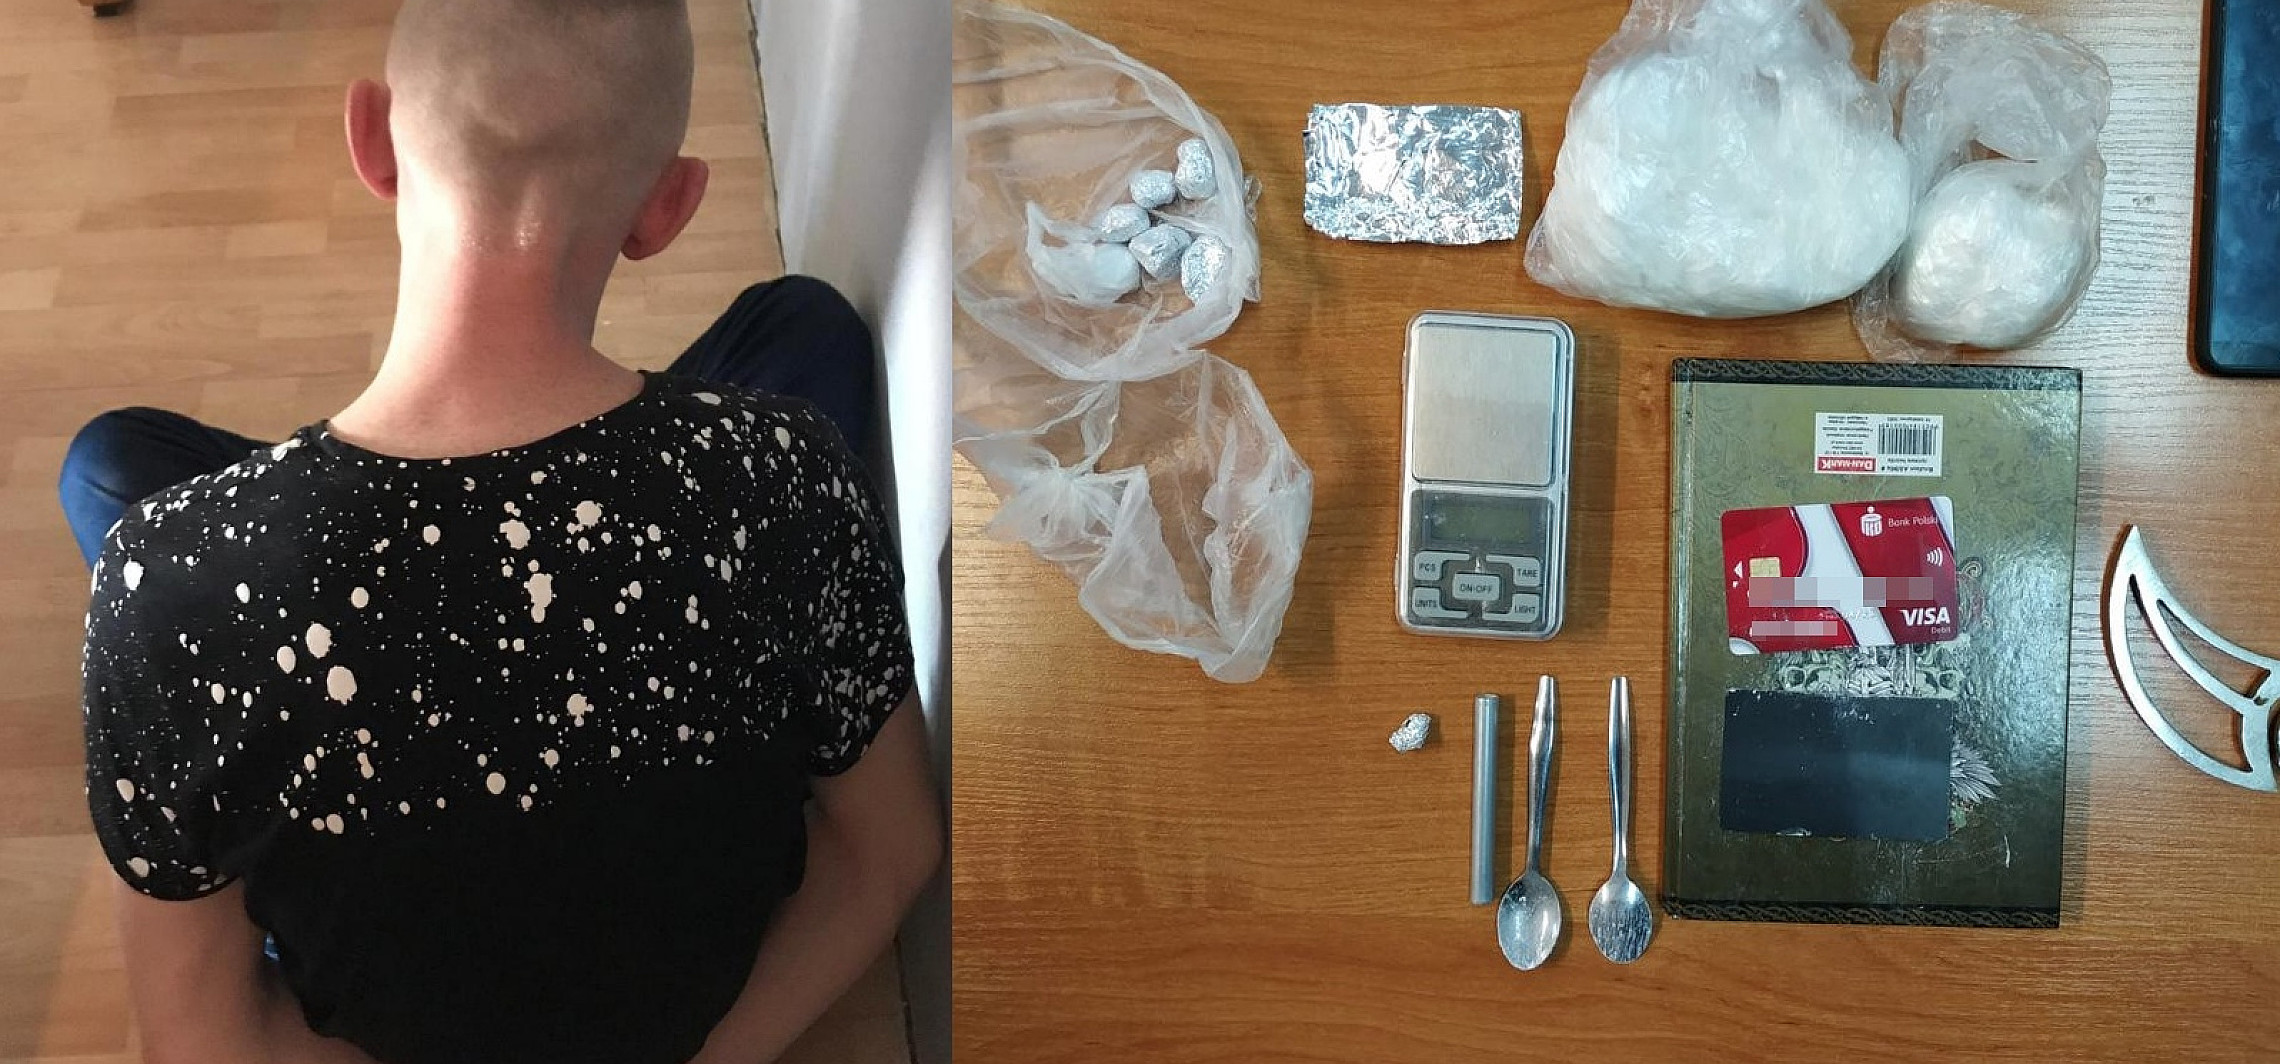 Bydgoszcz - 27-latek trzymał amfetaminę w lodówce